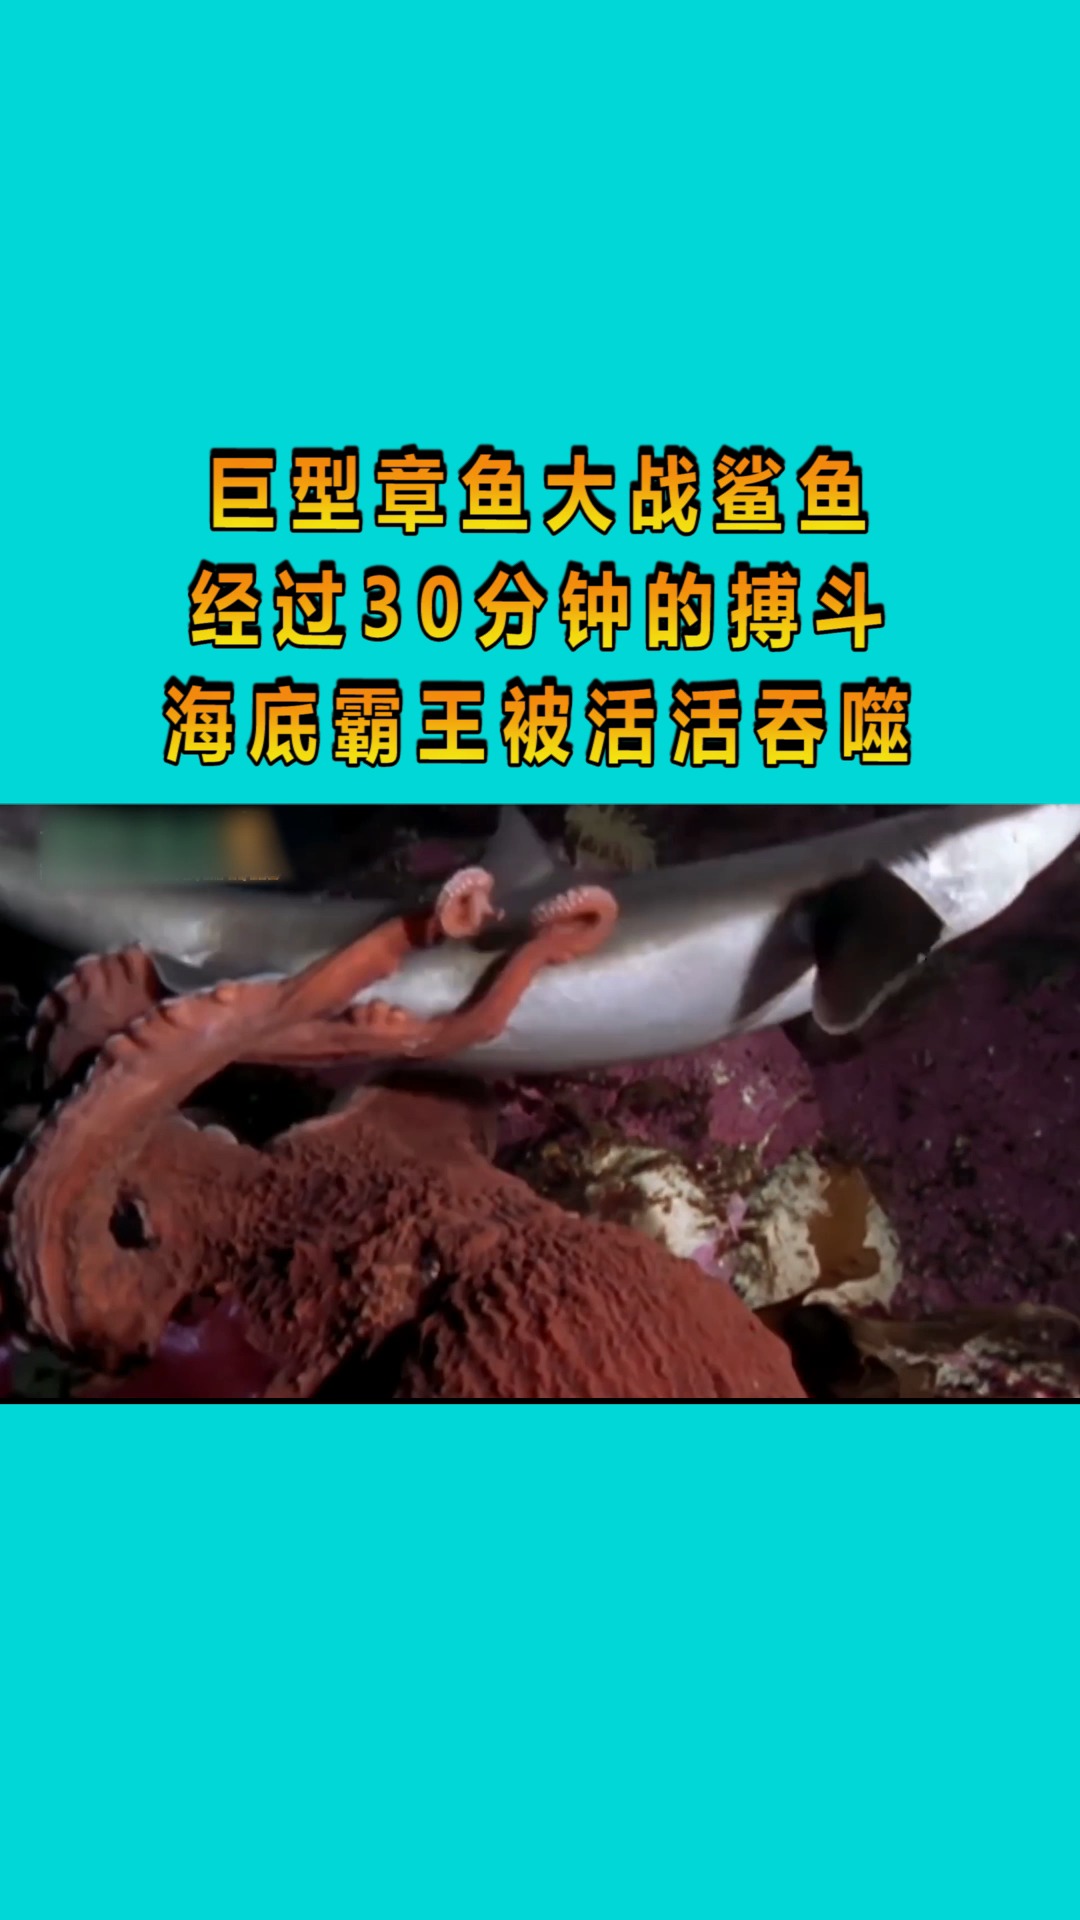 巨型章鱼大战鲨鱼,经过30分钟的搏斗,海底霸王被活活吞噬!